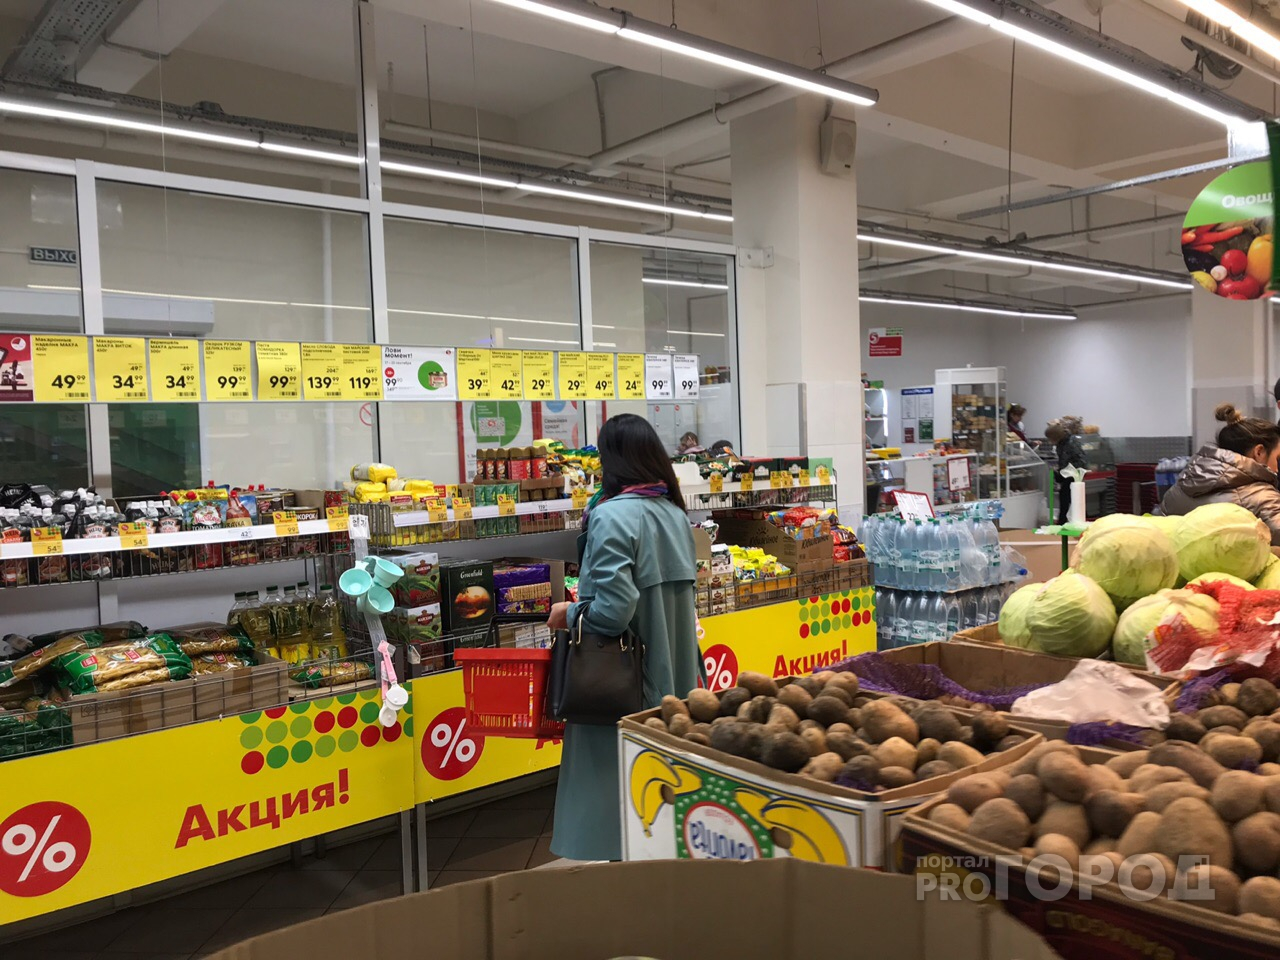 Чиновники прошлись по продуктовым магазинам и заметили падение цен